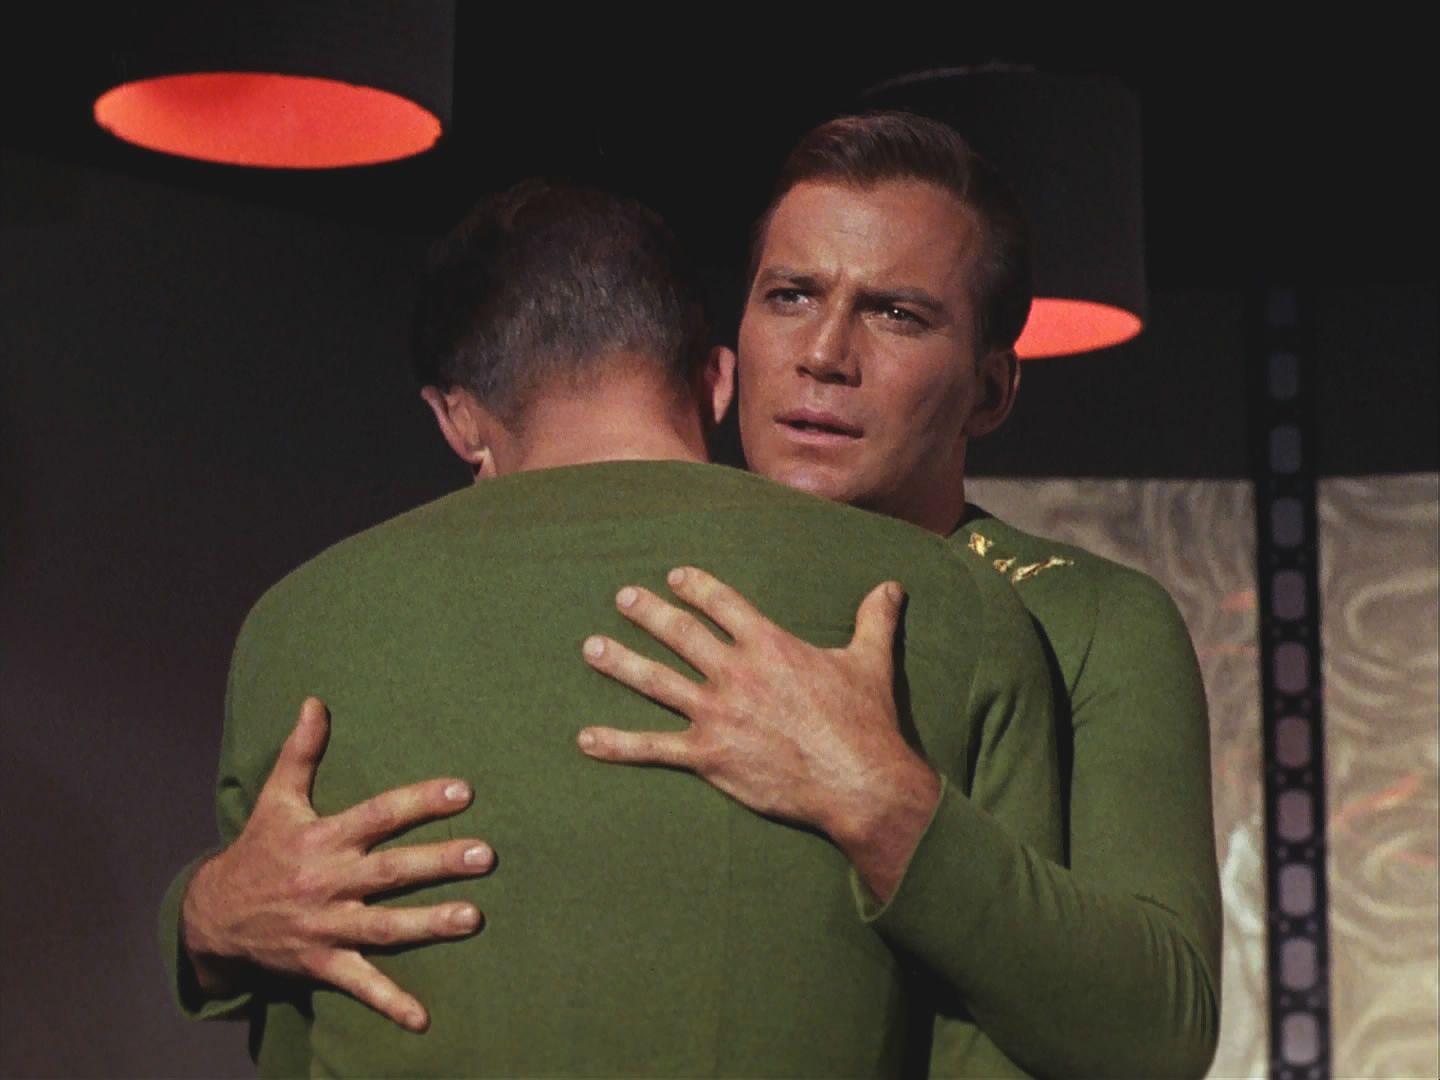 "Zlý" Kirk se nevzdal bez boje, chtěl žít a být kapitánem. Pochopil ale, že ani jeden z nich není úplný. Transport se podařil a nazpátek transportovali jednoho kapitána se všemi jeho vlastnostmi.